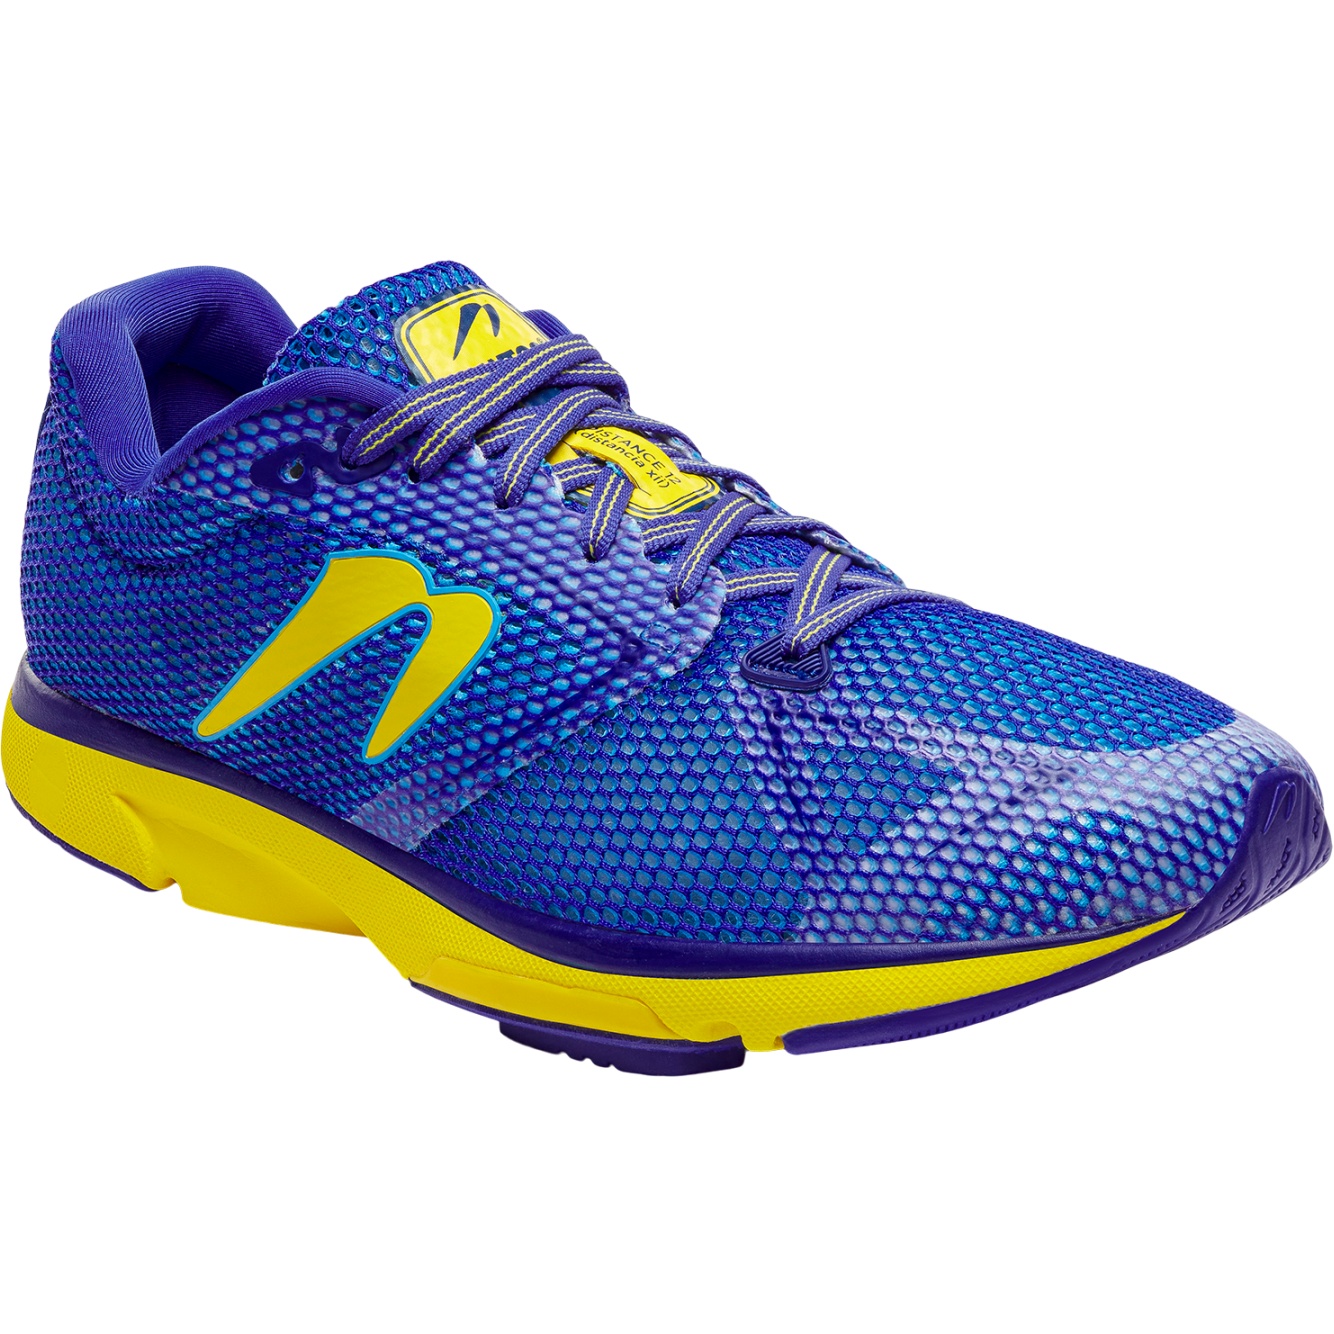 Productfoto van Newton Running Distance 12 Hardloopschoenen - navy blue/yellow